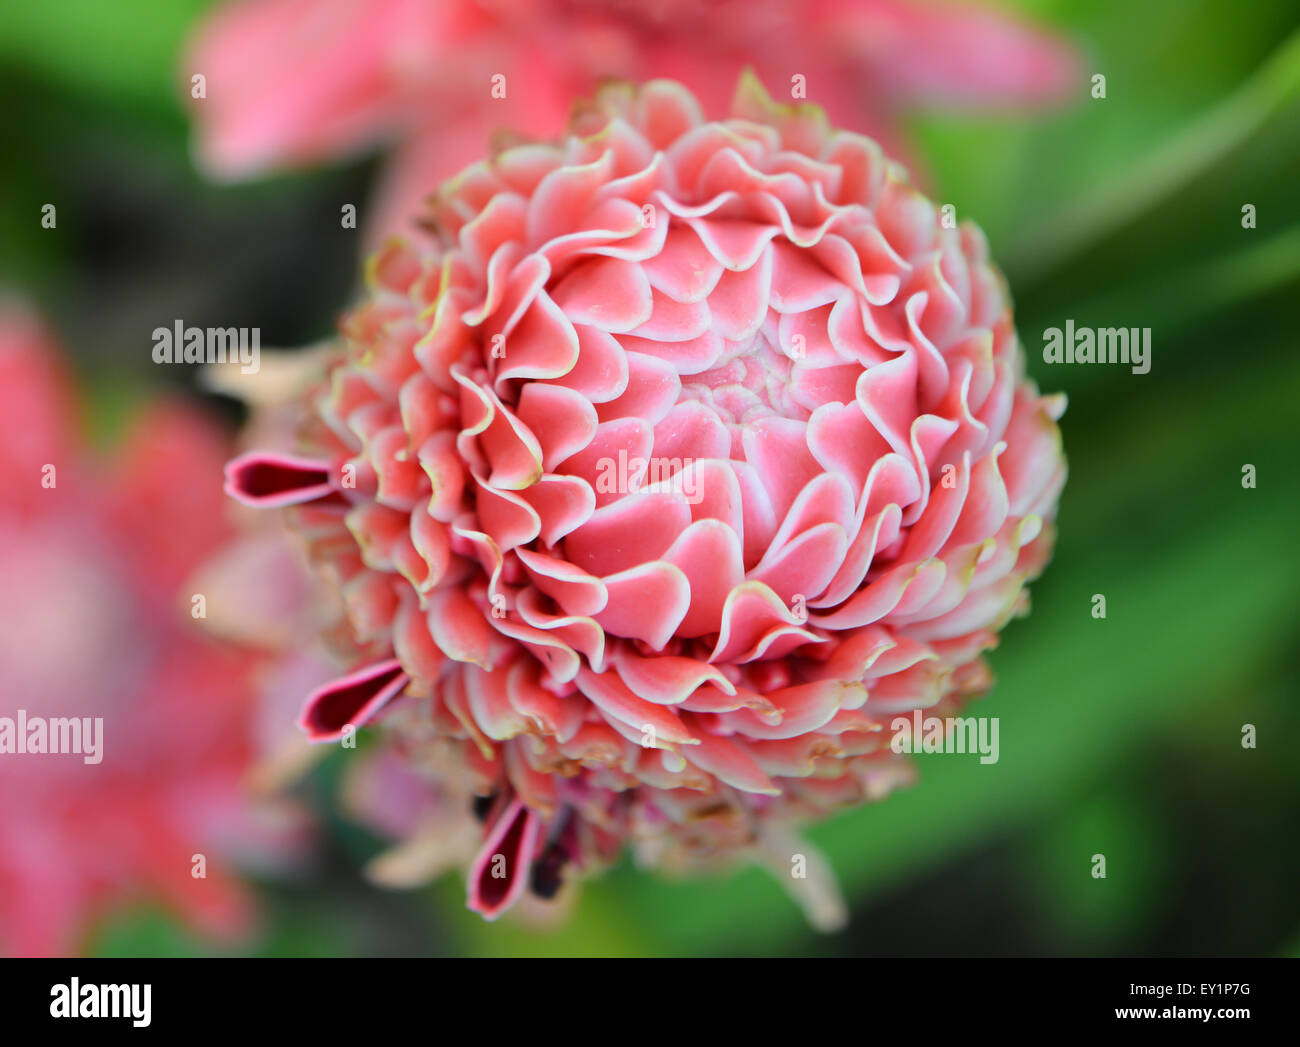 etlingera  elatior flower in the garden Stock Photo